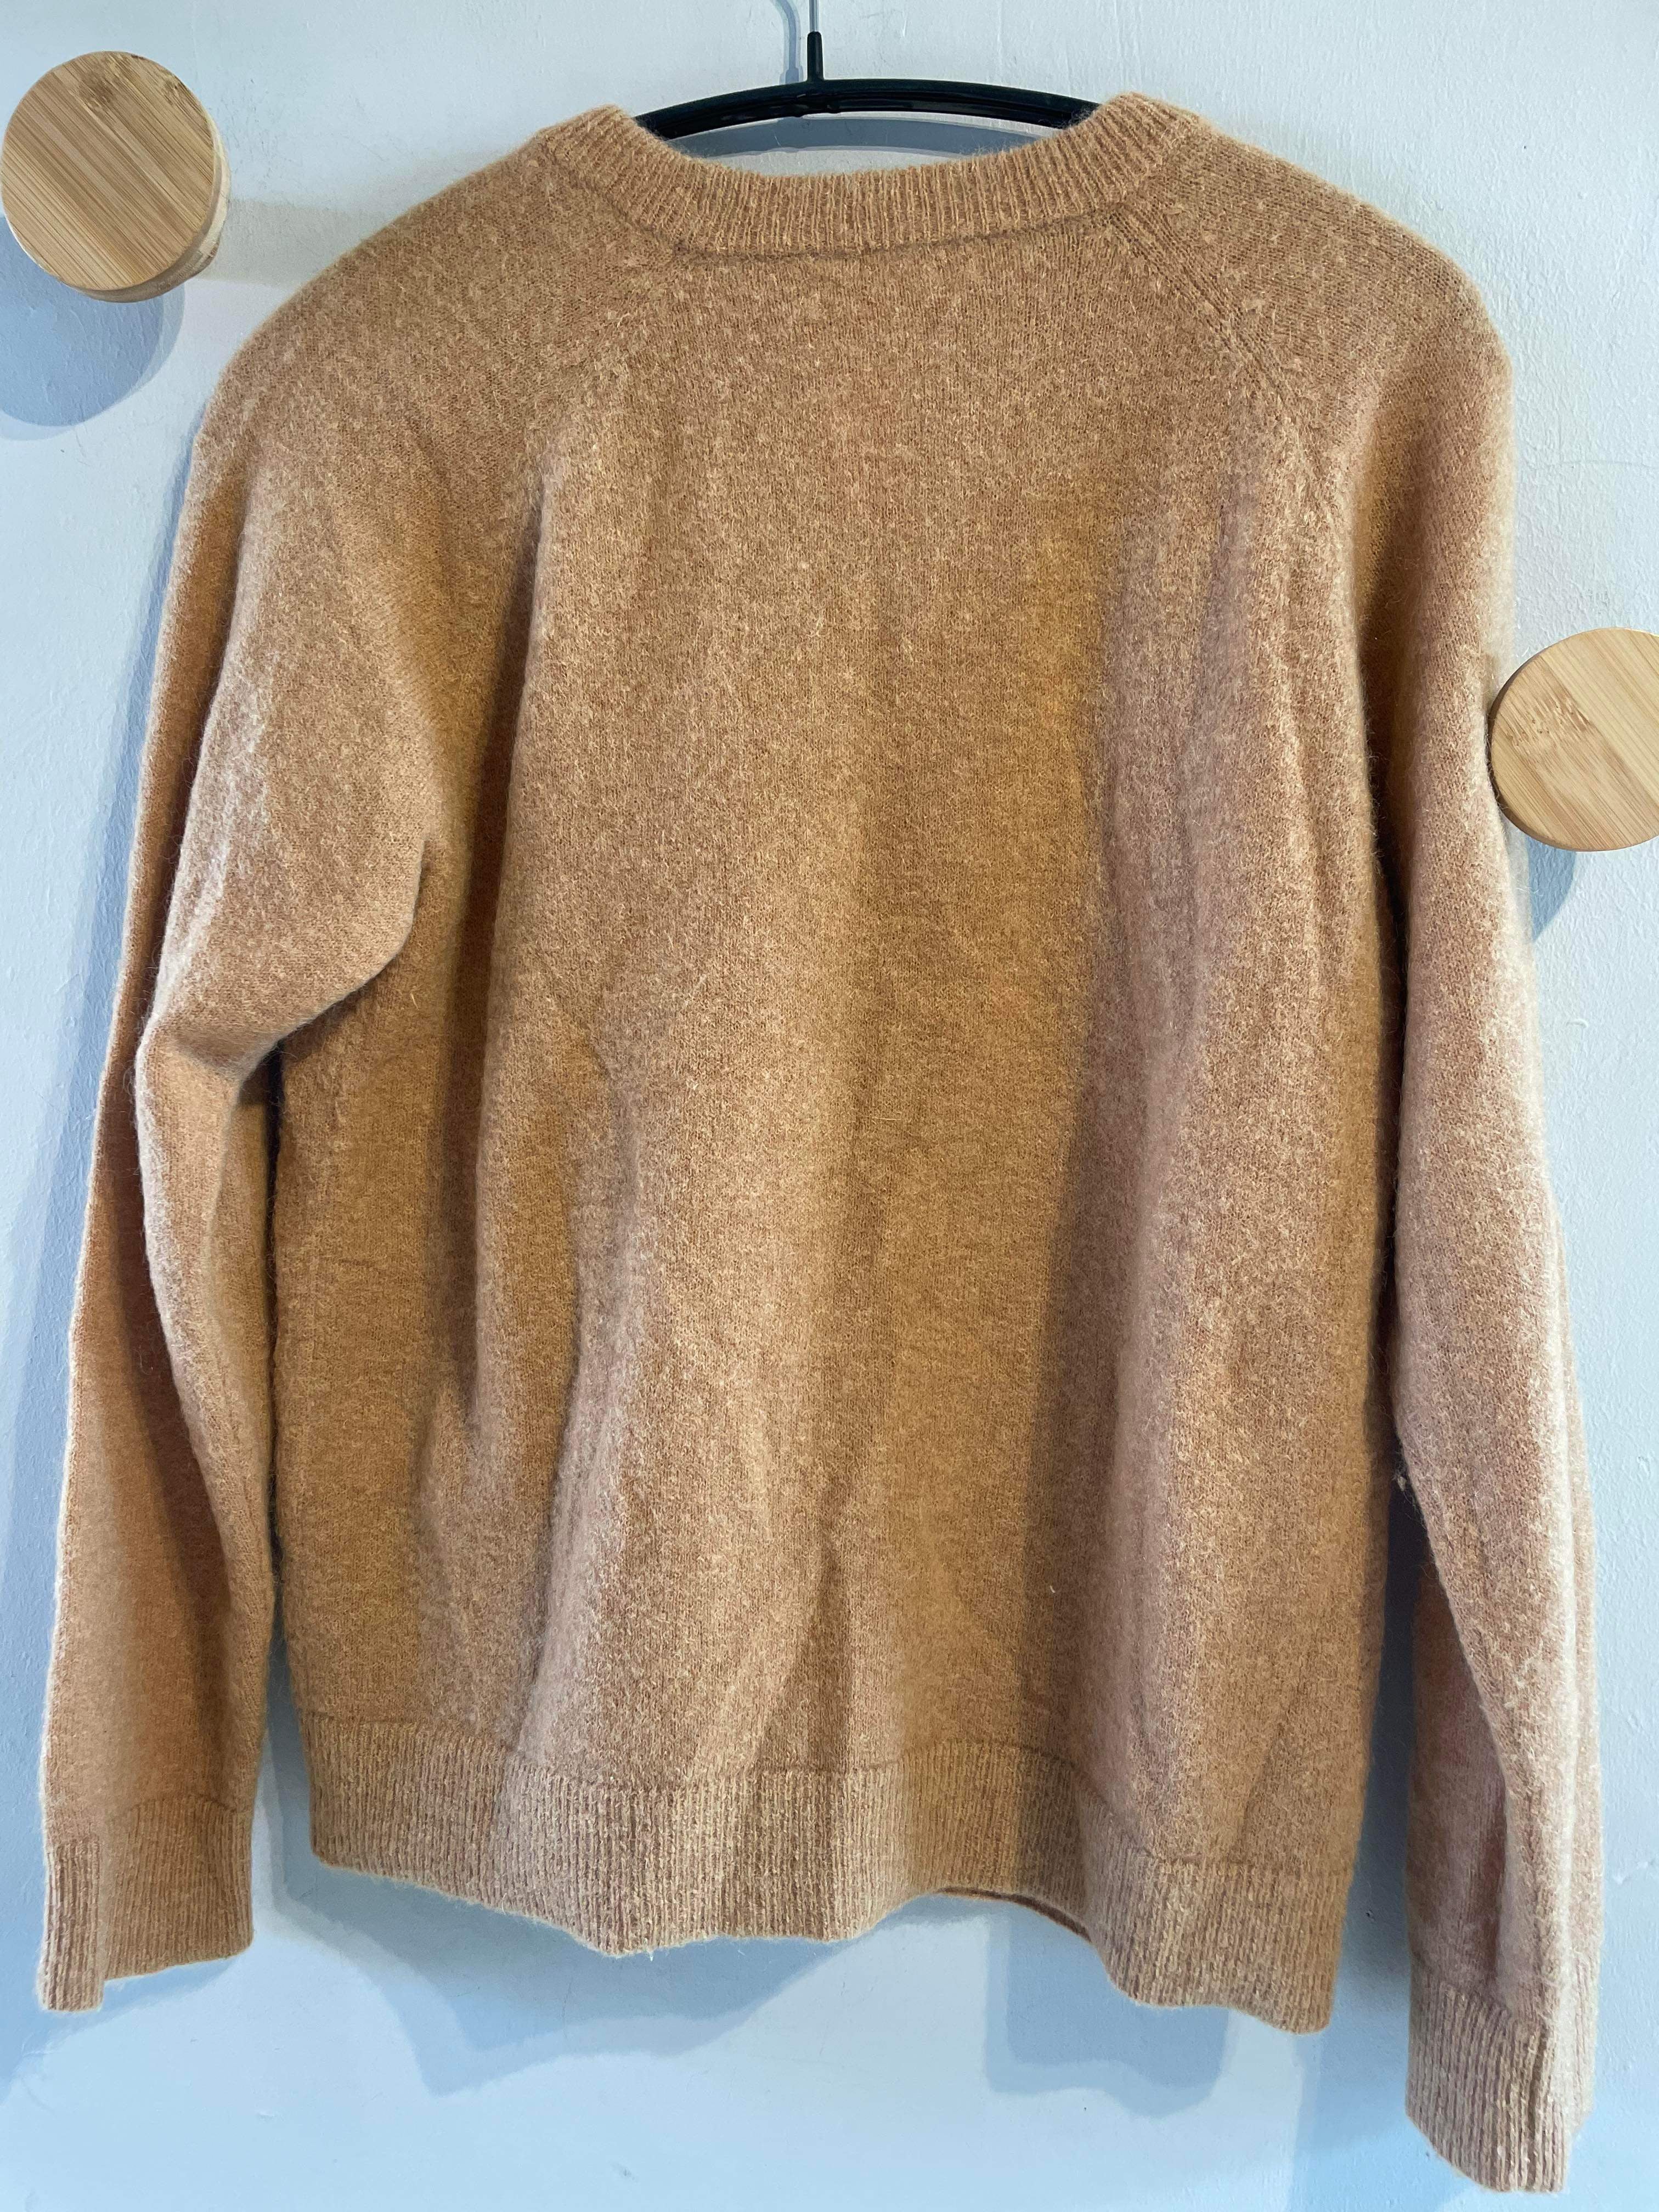 Sofie Schnoor - Sweater - Size: S